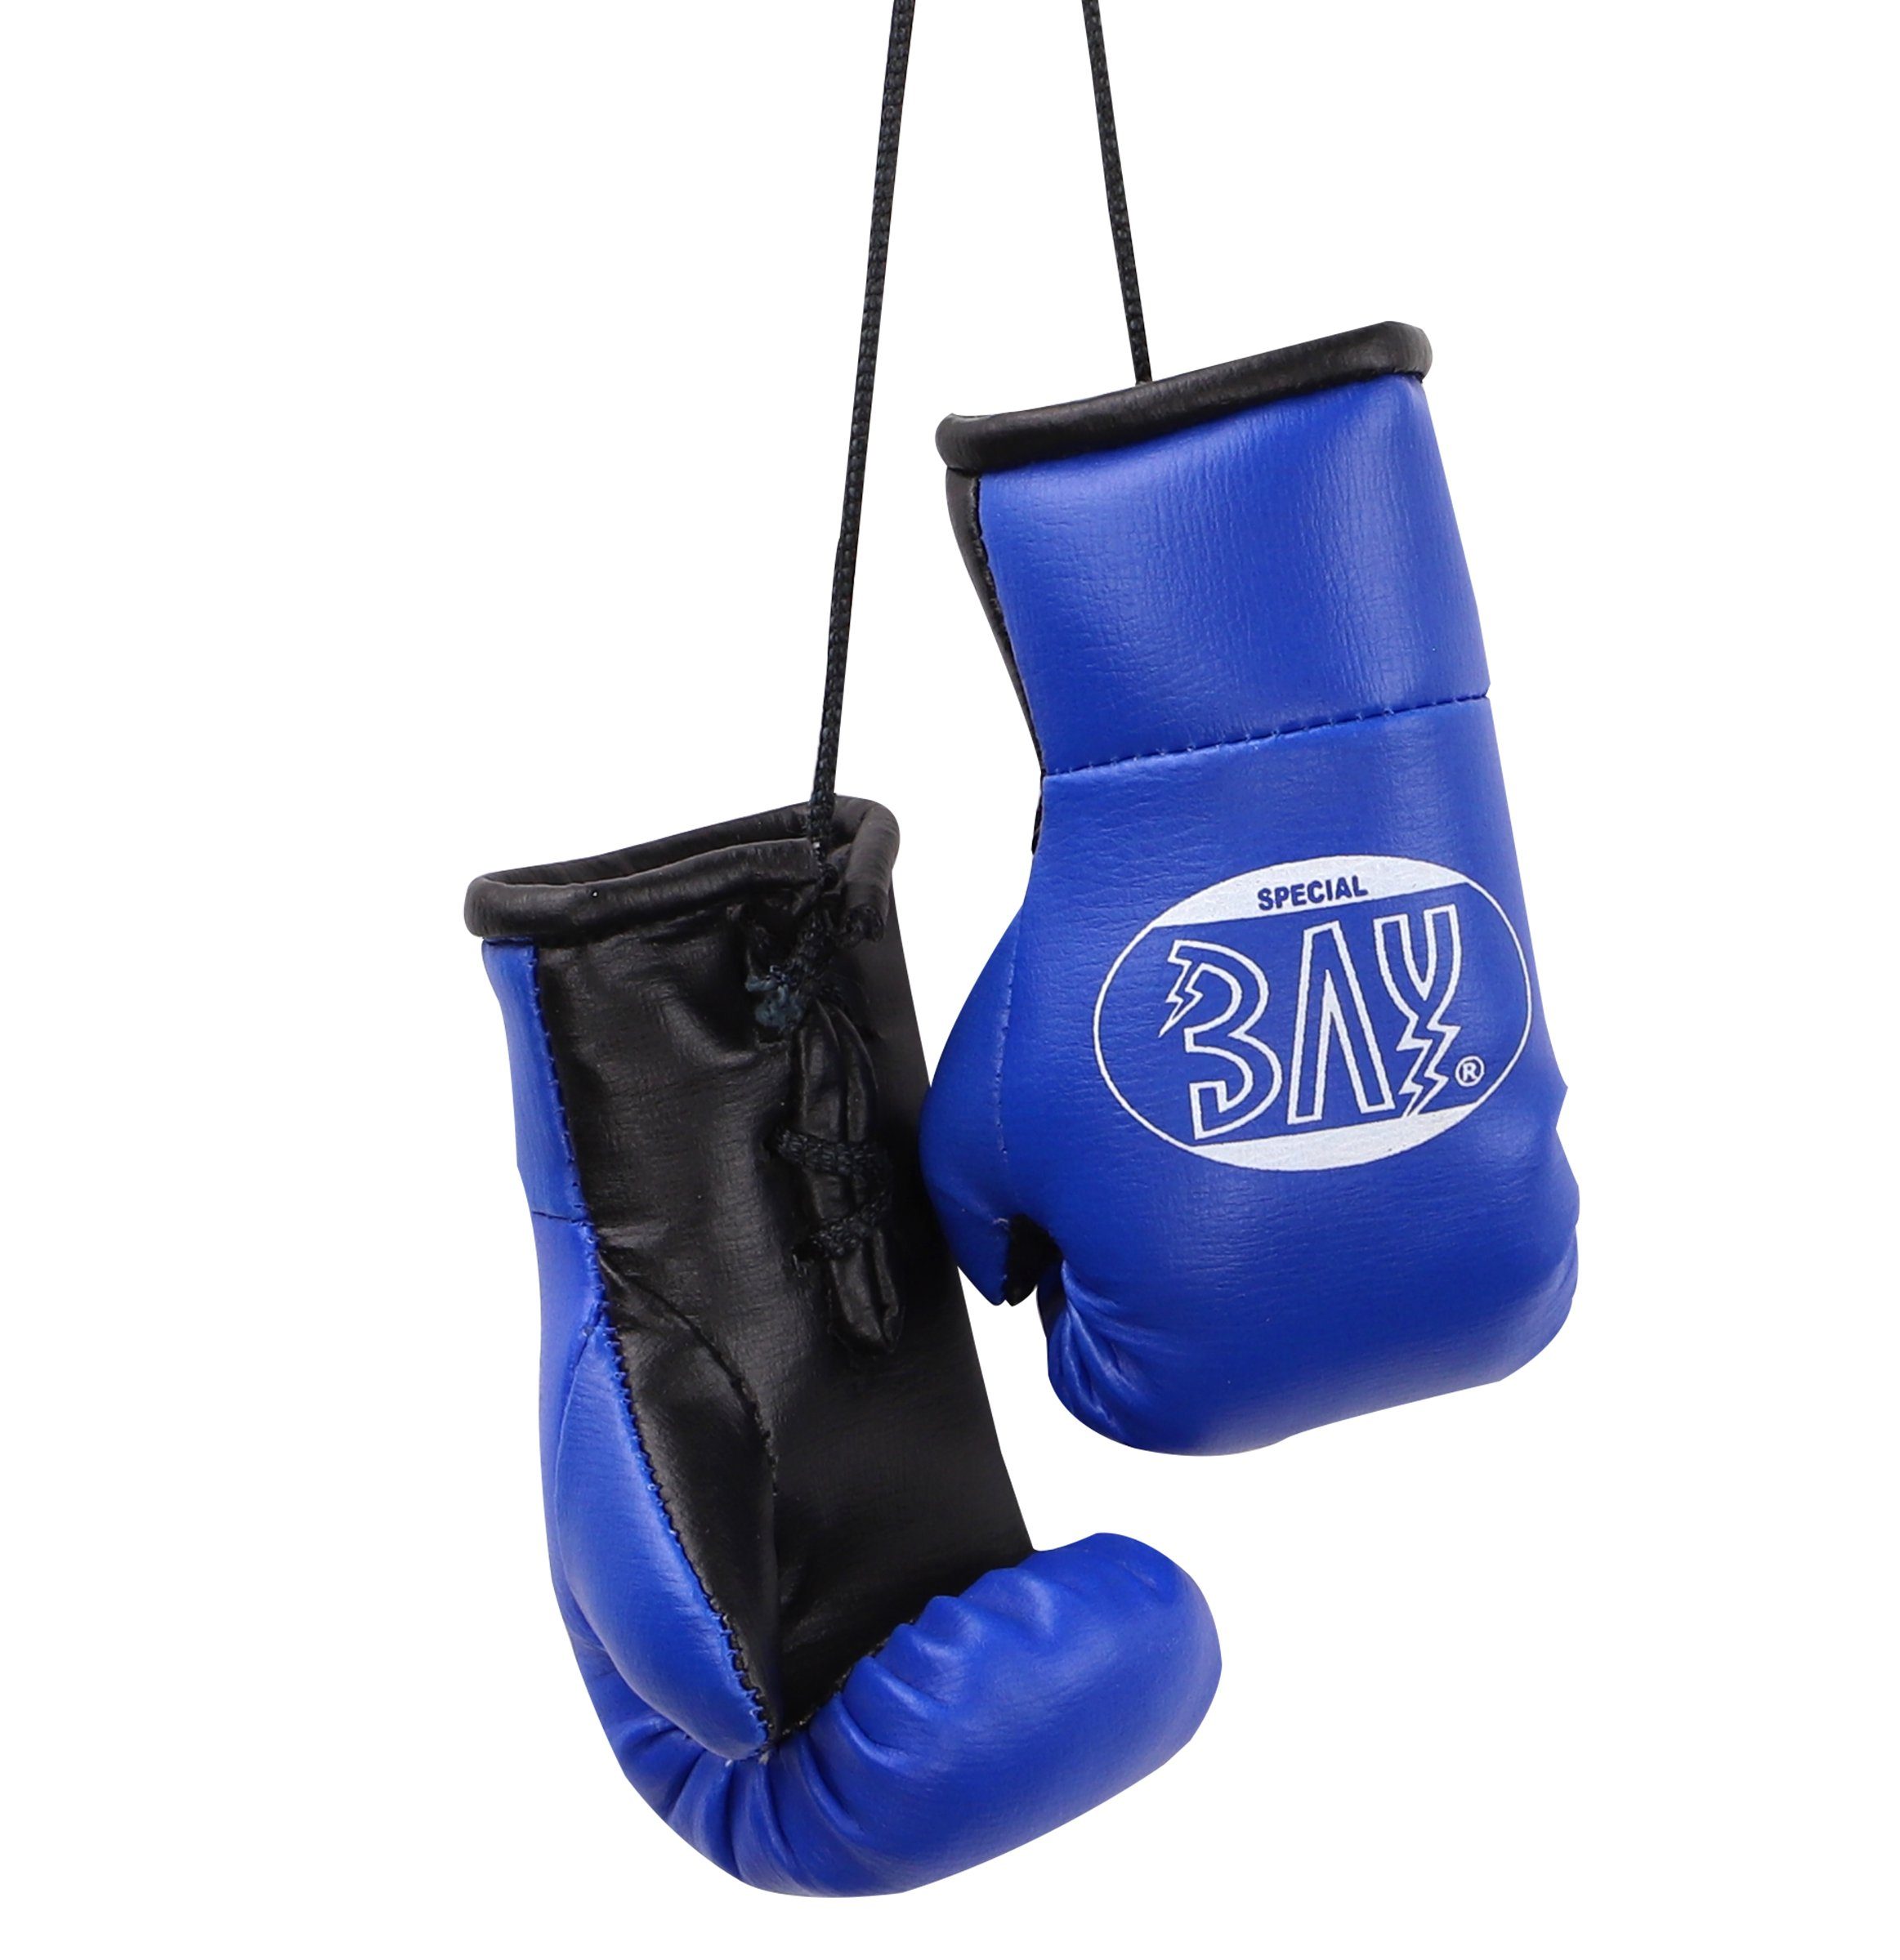 BAY-Sports Boxhandschuhe Mini Paar usw. Deko blau, Auto Boxen Box-Handschuhe Tasche, Geschenk Anhänger für Autospiegel